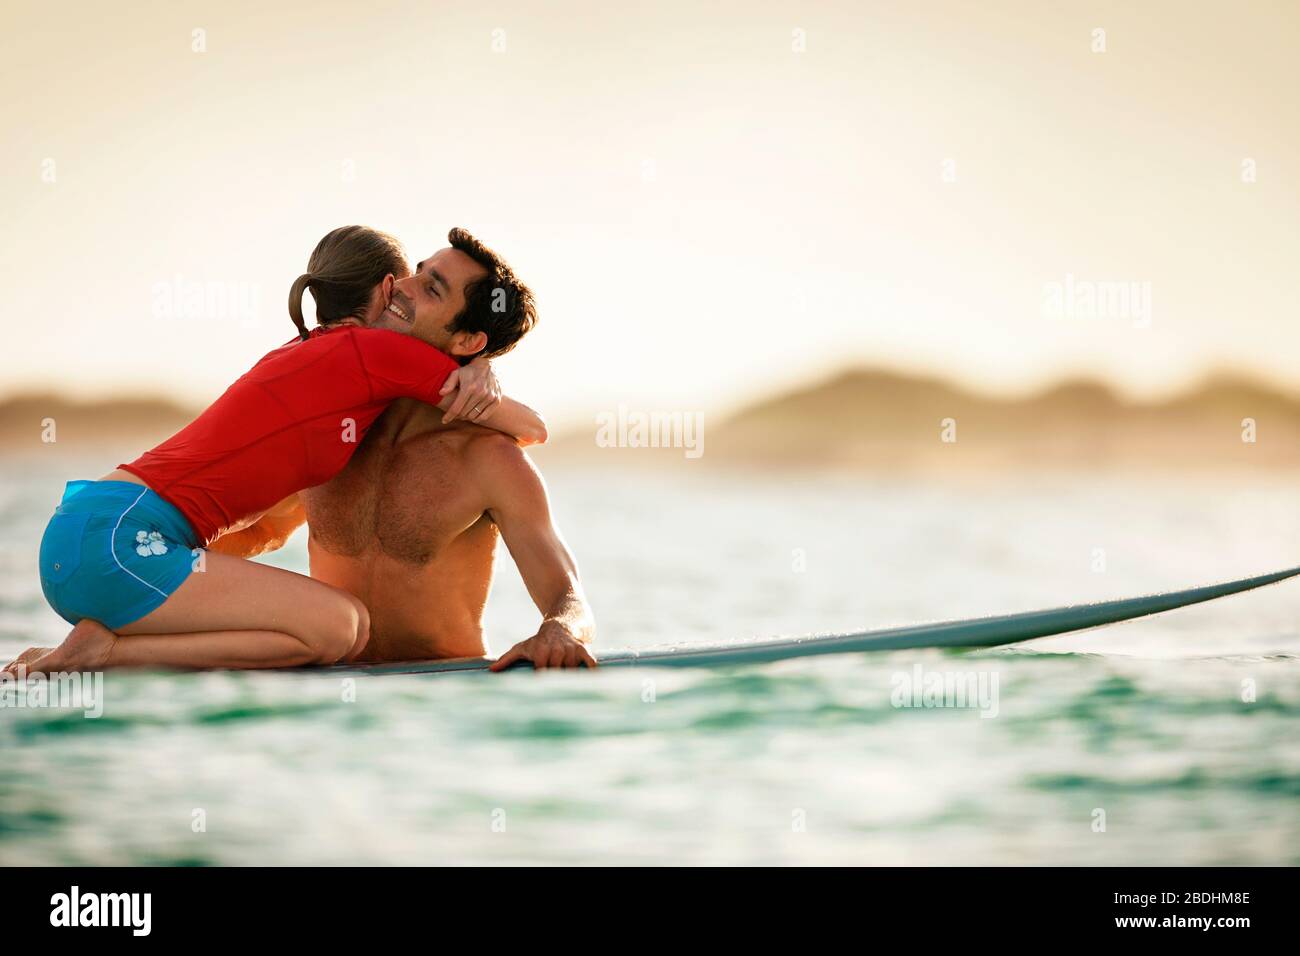 Donna inginocchiata su una tavola da surf, abbracciando il suo ragazzo. Foto Stock